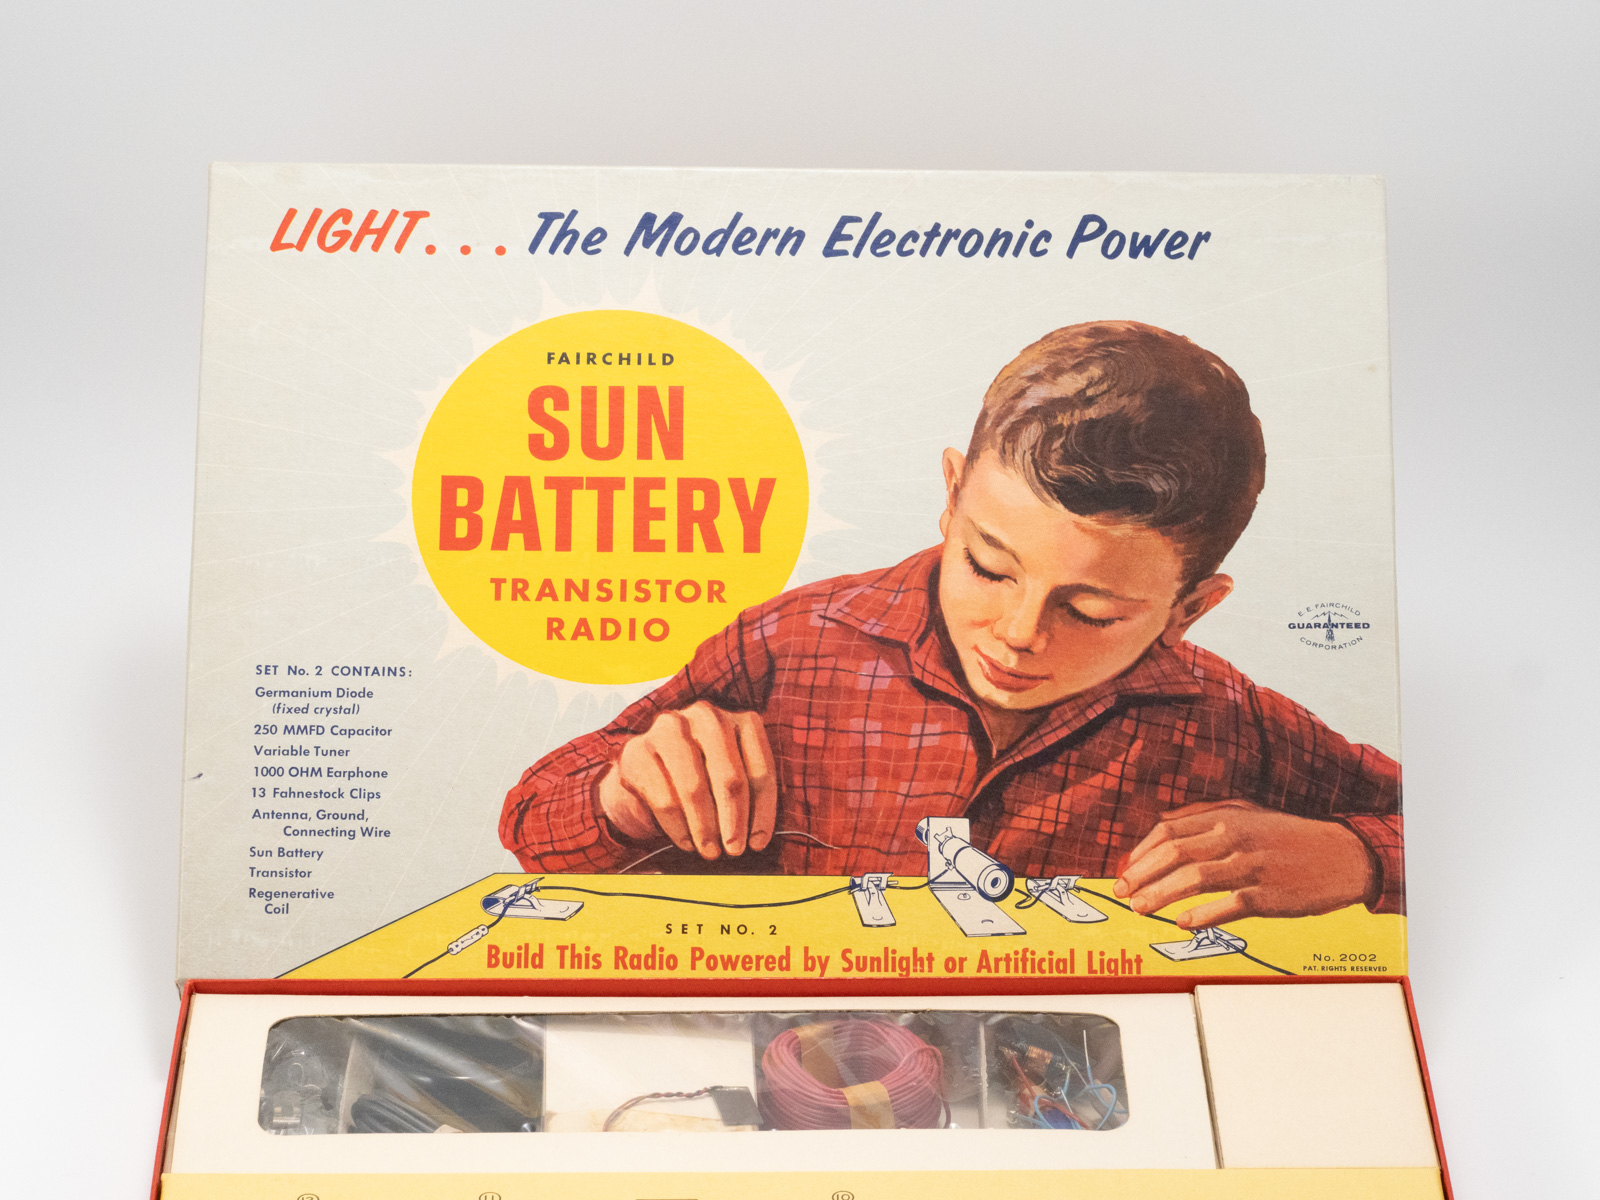 Fairchild Sun Battery Transistor Radio